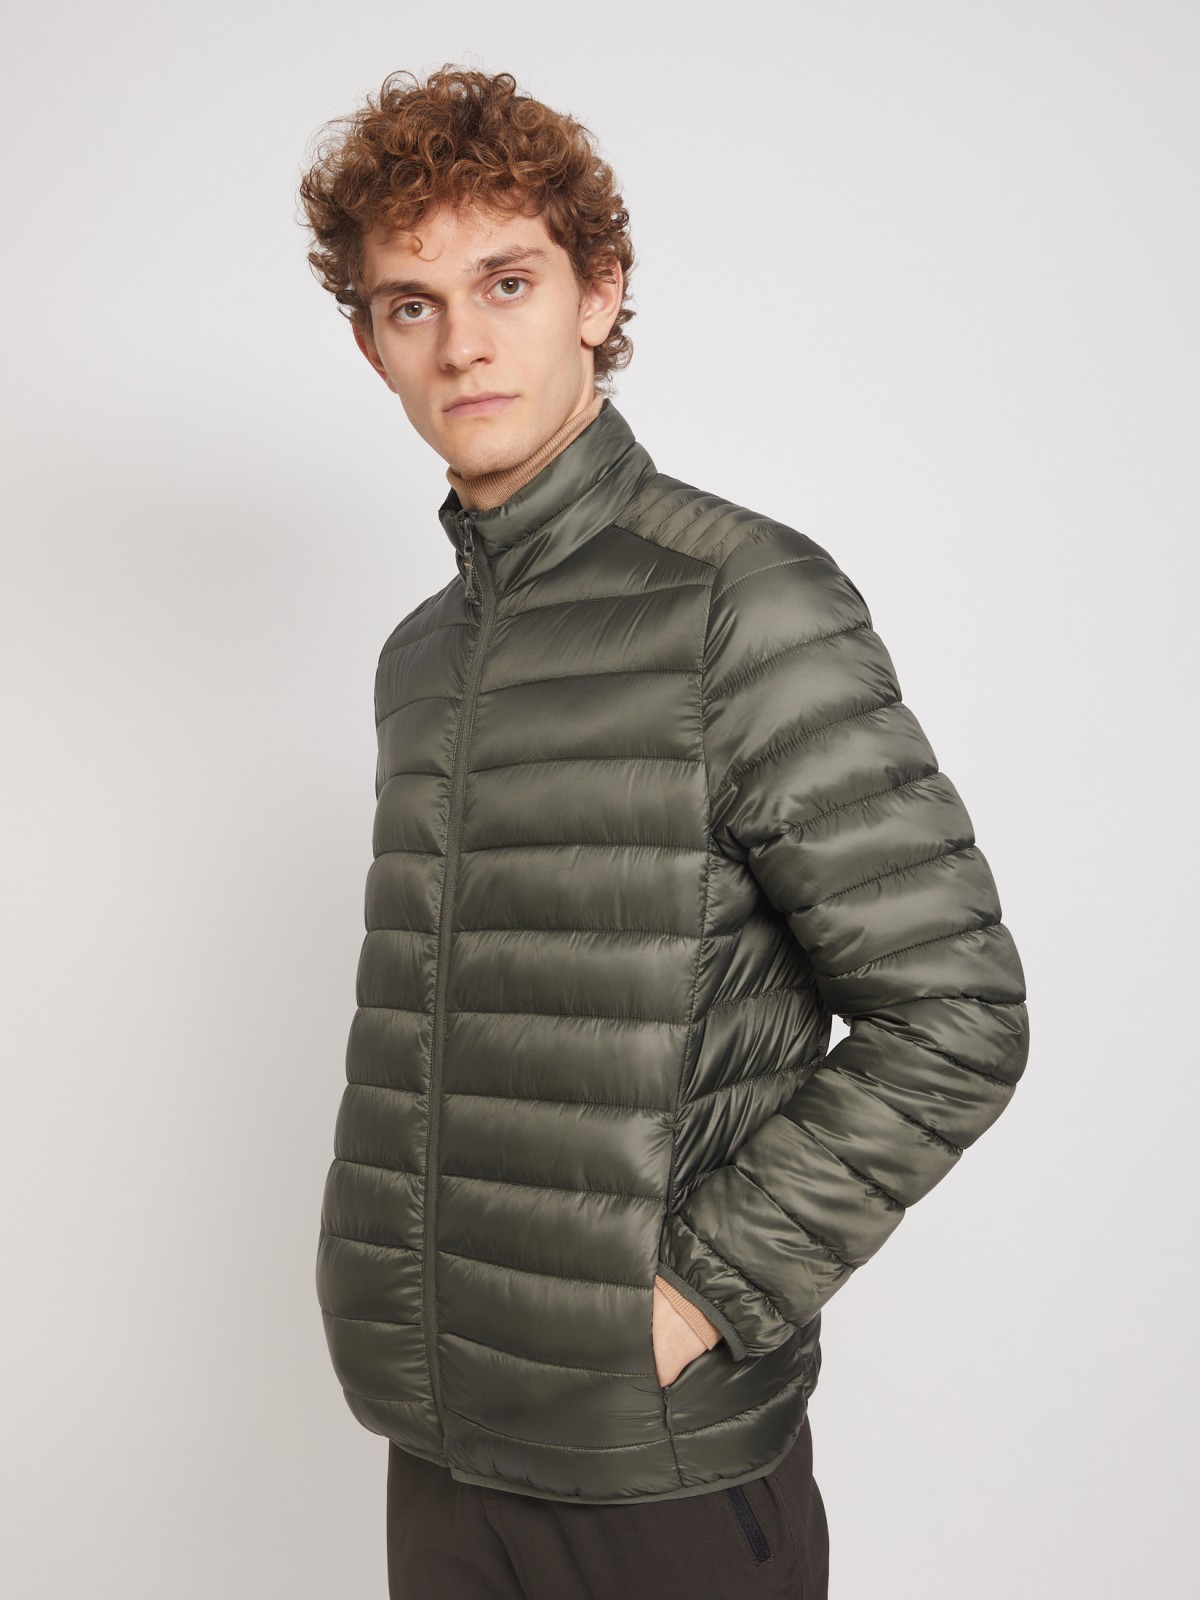 Ультралёгкая стёганая куртка с воротником-стойкой zolla 011335102214, цвет хаки, размер S - фото 5